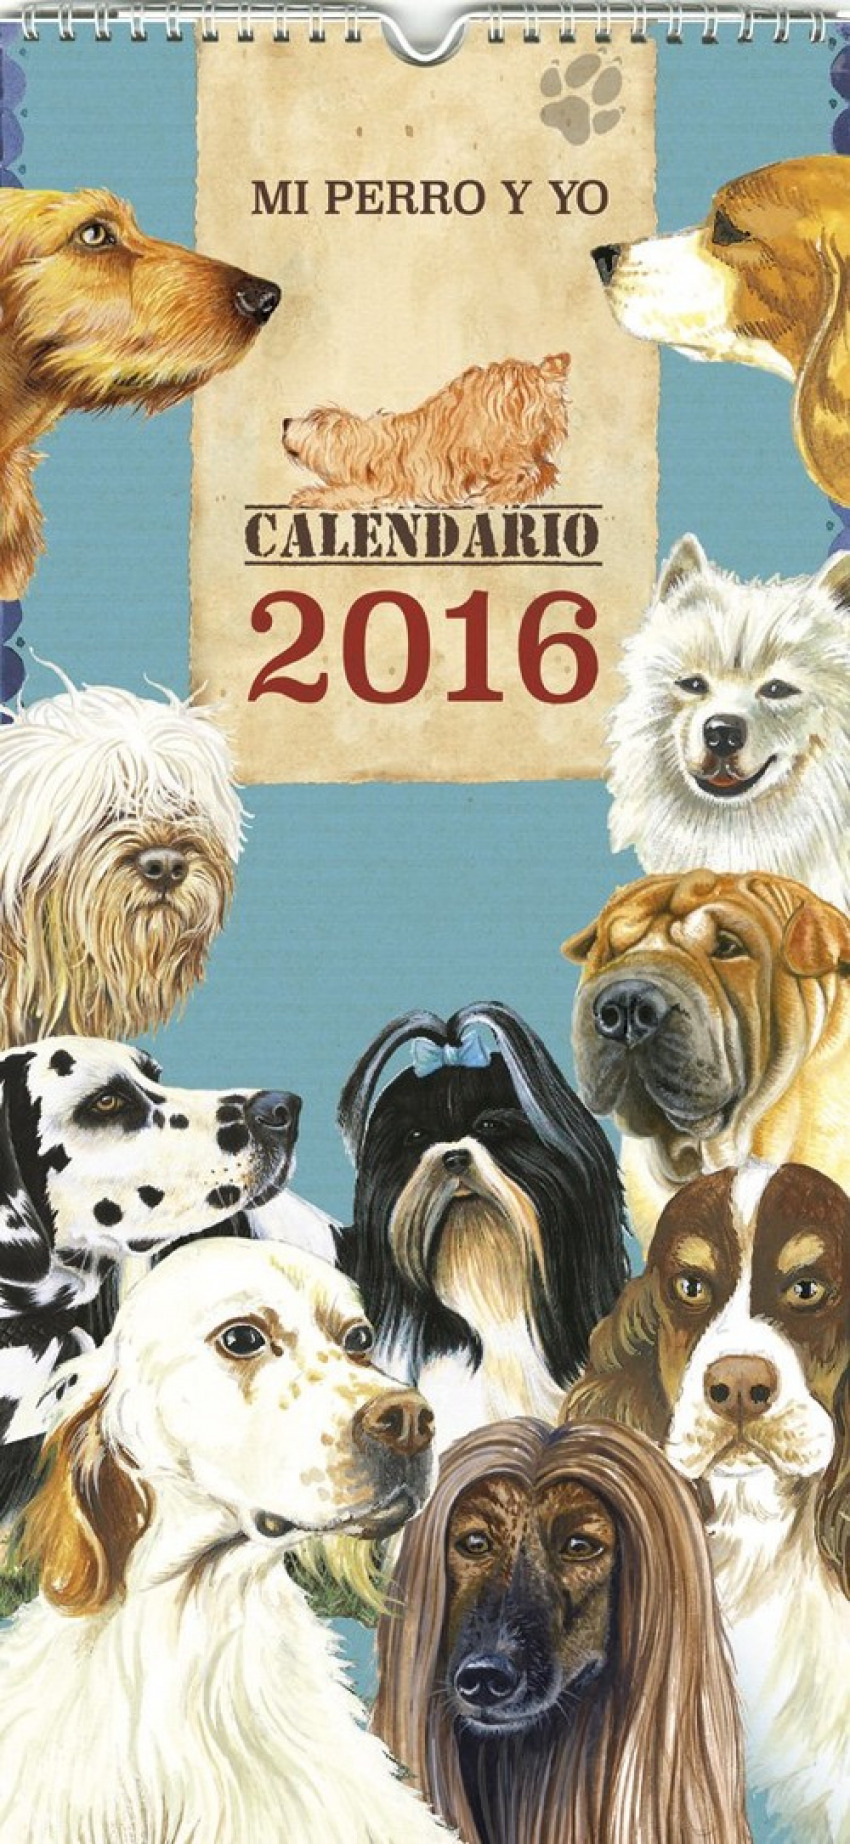 Calendario mi perro y yo 2016 - Vv.Aa.